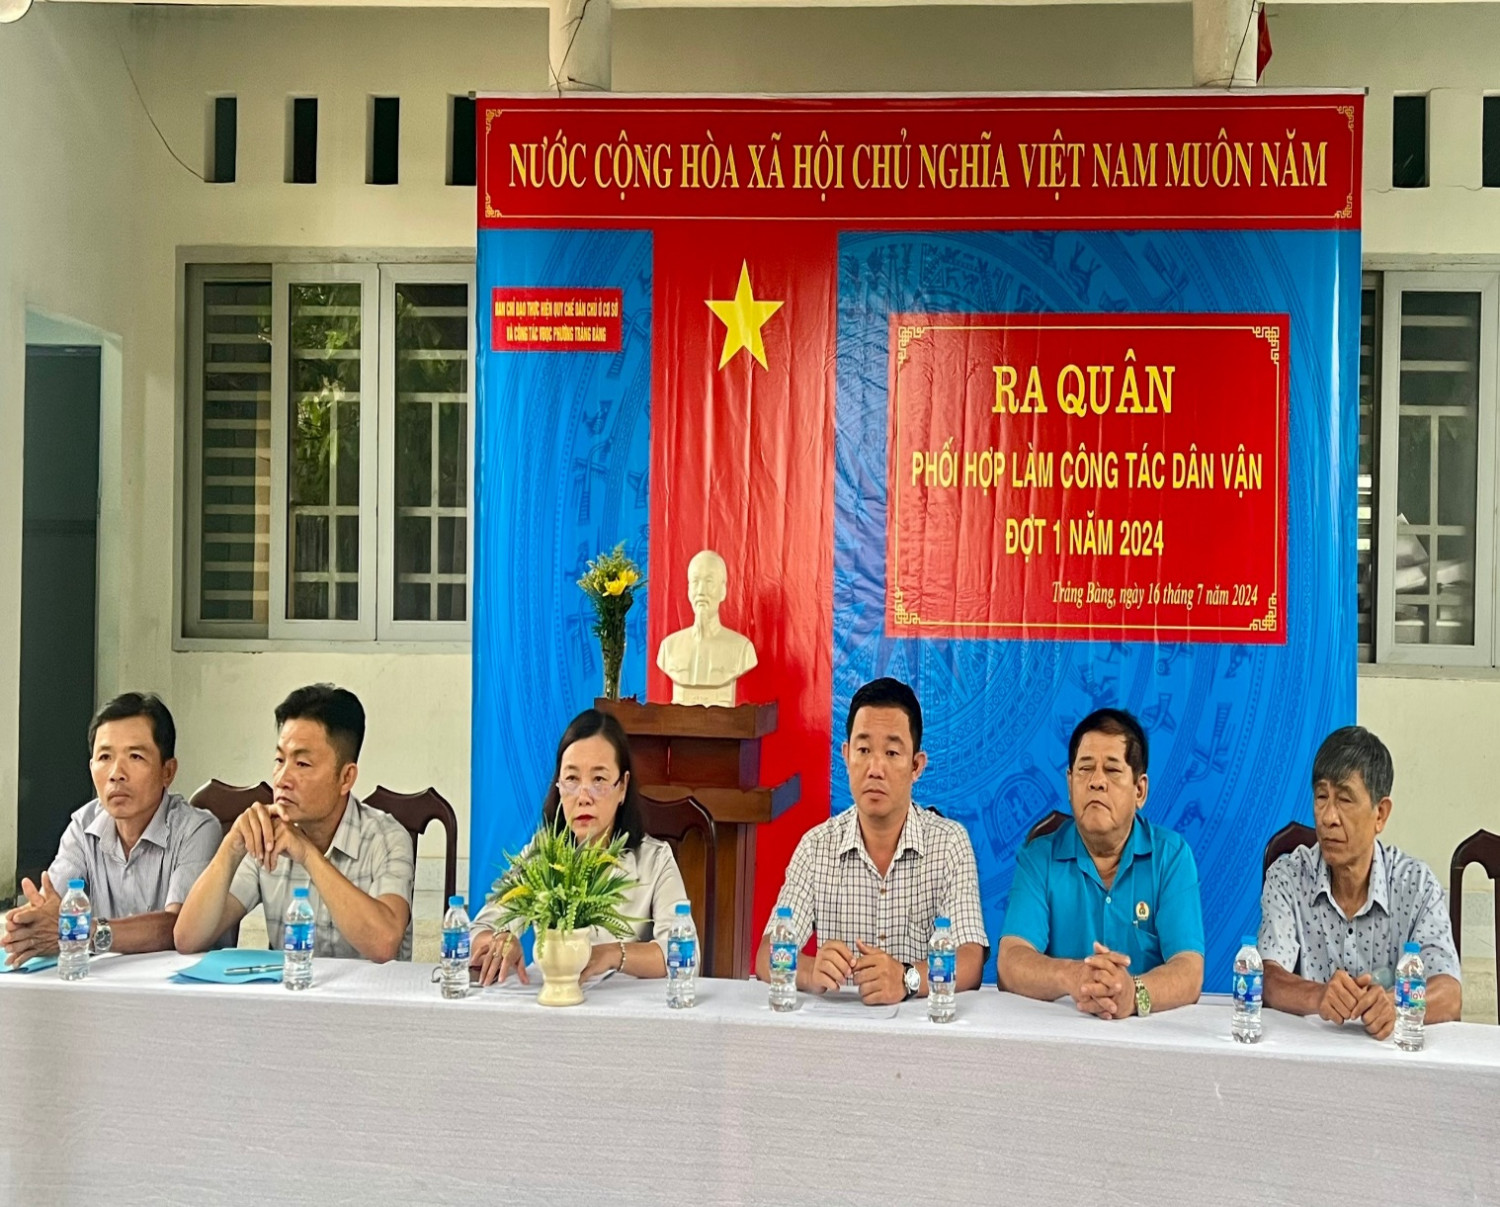 Phường Trảng Bàng: Ra quân phối hợp làm công tác dân vận đợt I/2024 tại khu phố Gia Huỳnh